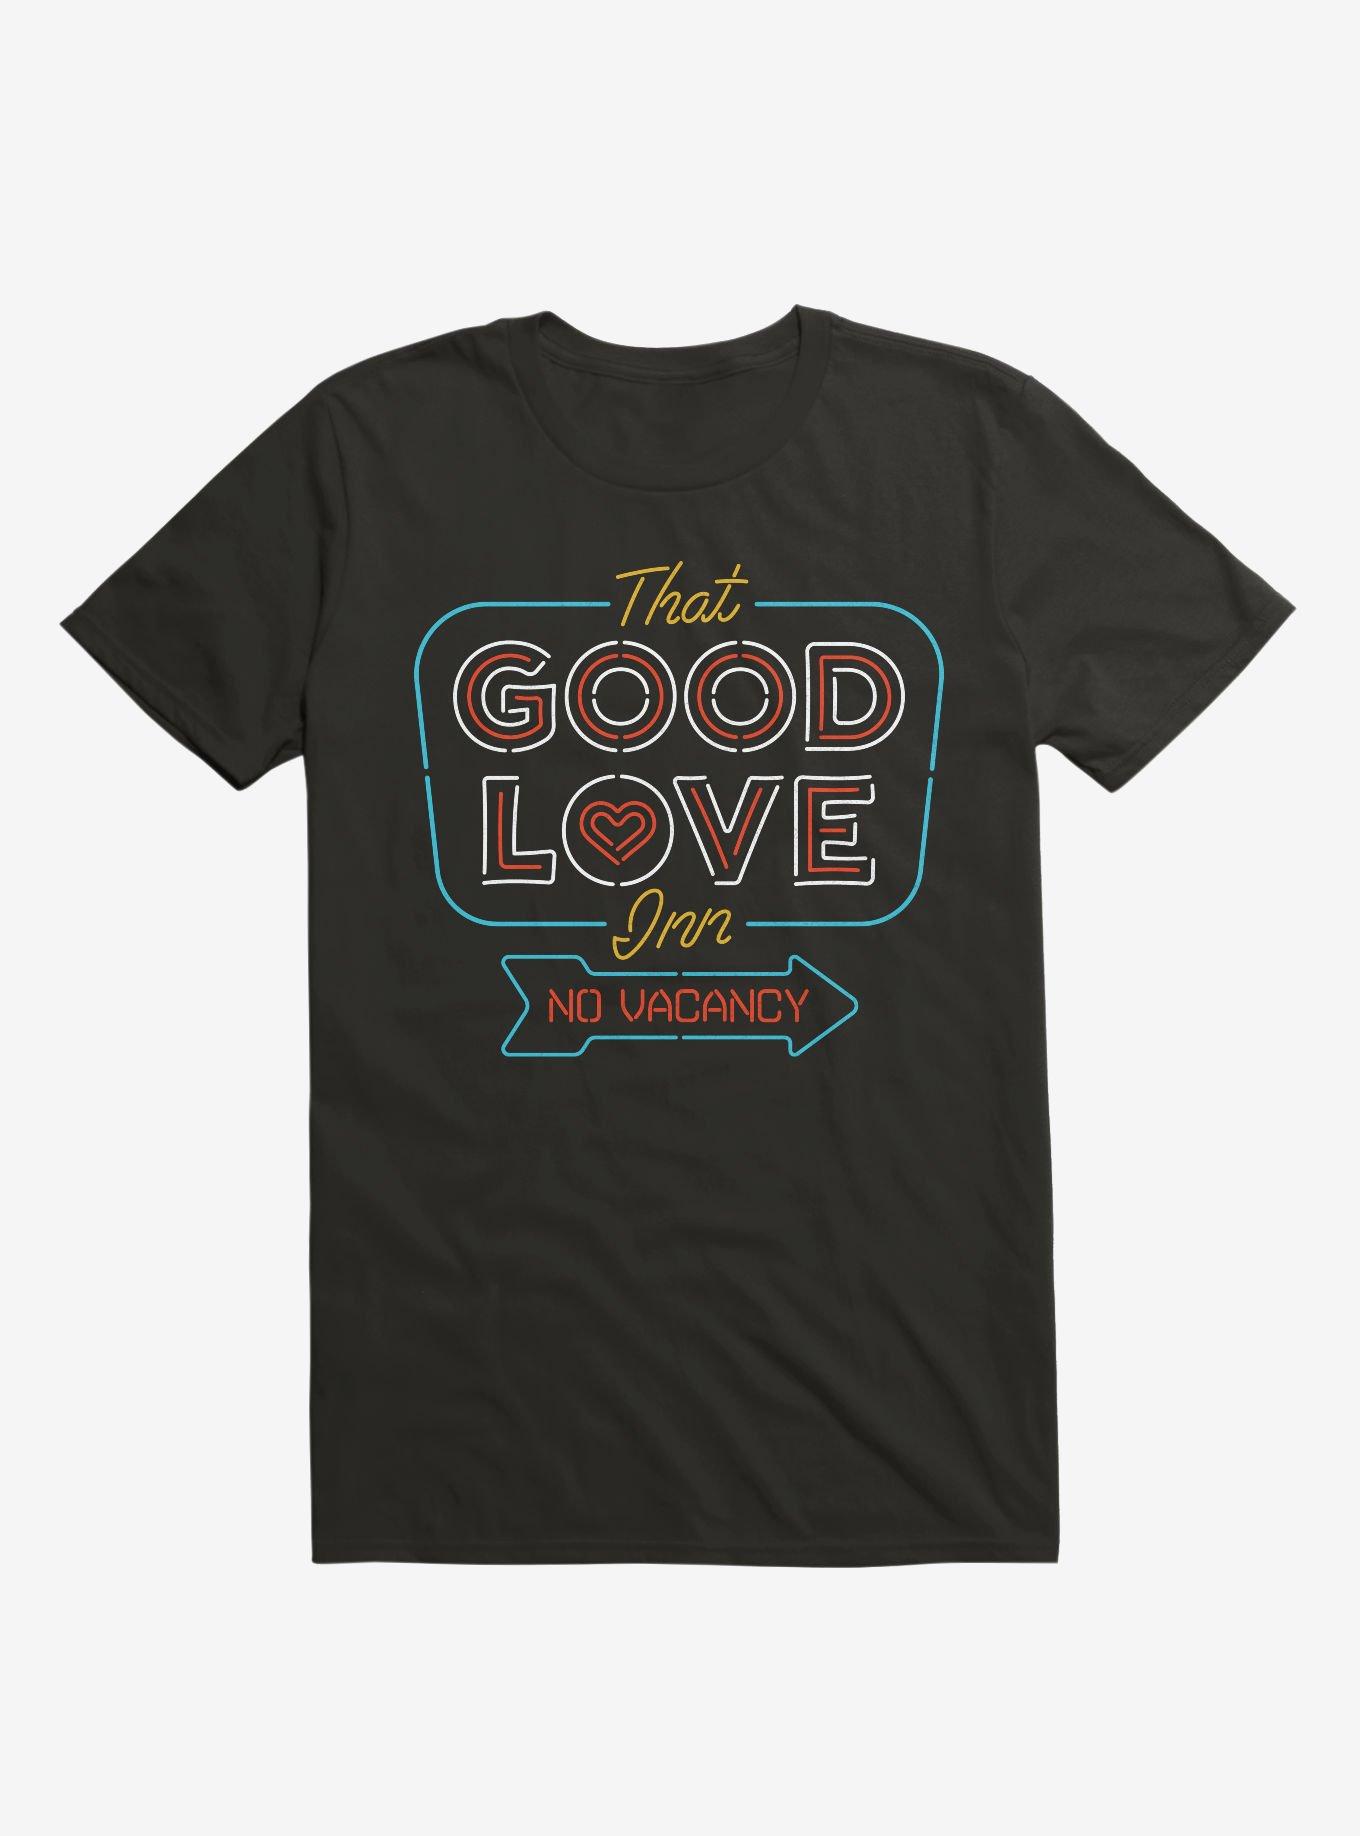 Good Love Inn No Vacancy T-Shirt, BLACK, hi-res